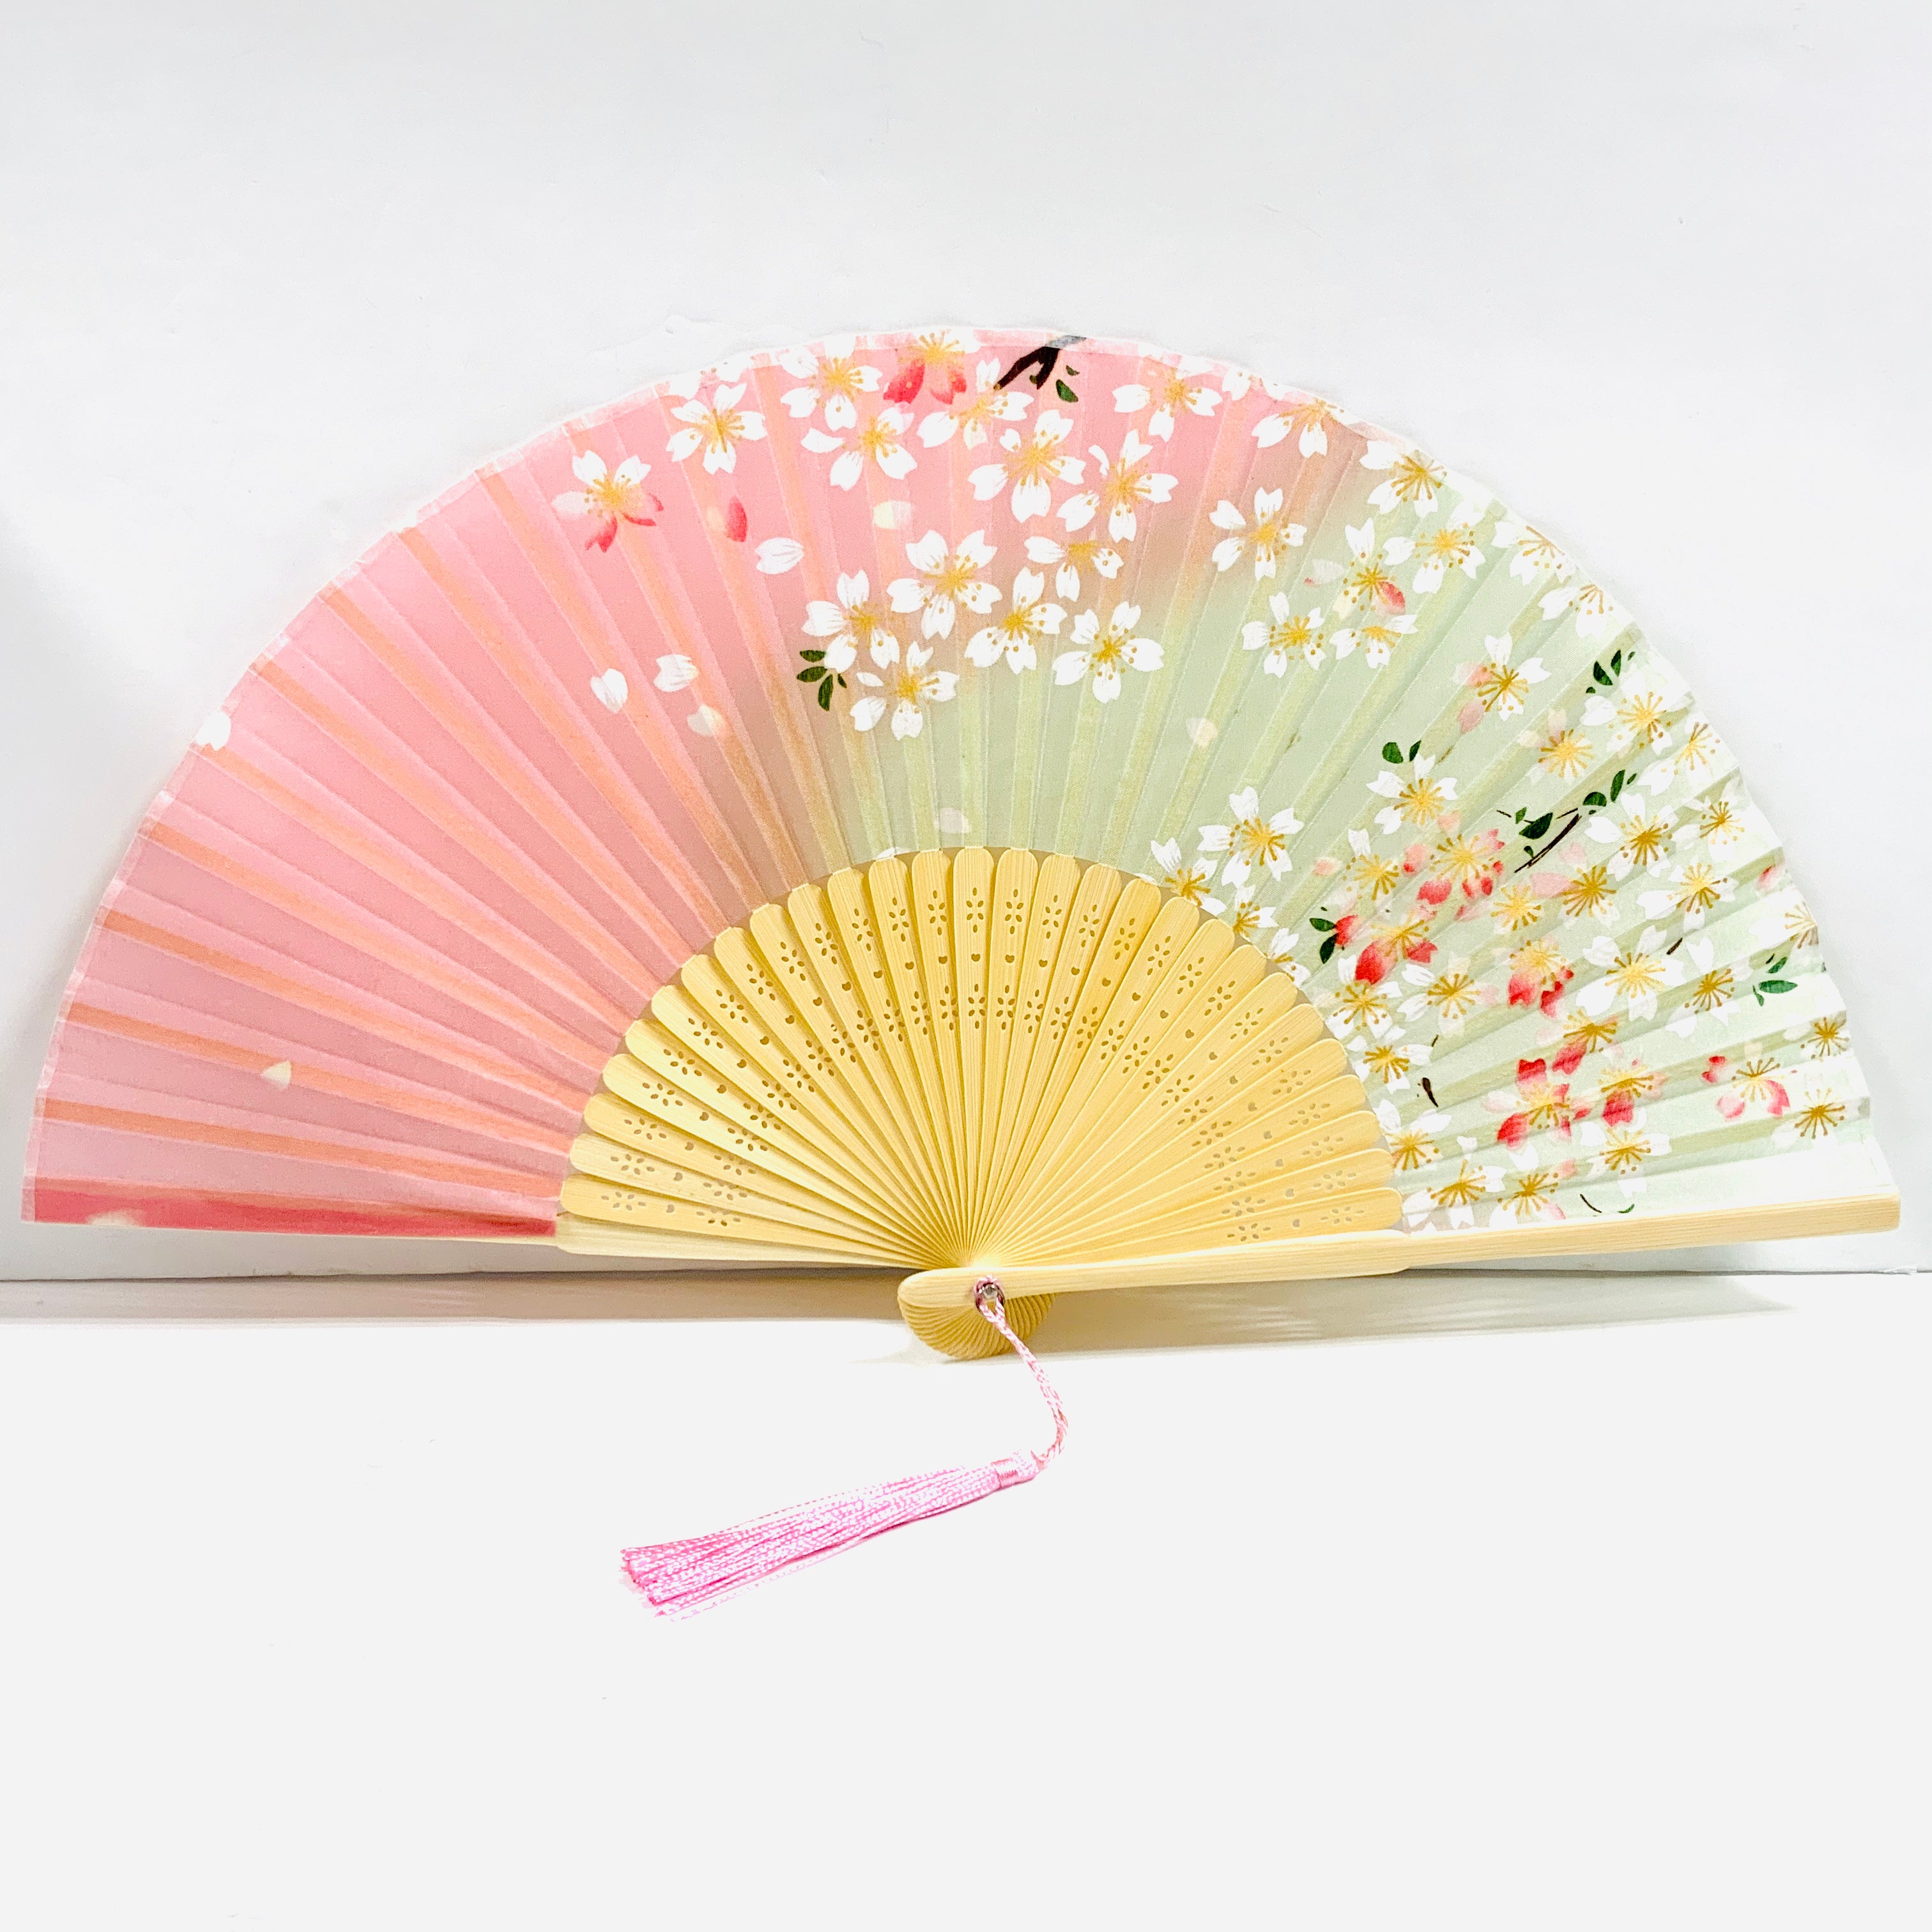 扇子 シルク 桜 花びら 日本 お土産 人気 hand fan folding fan | 外国人 